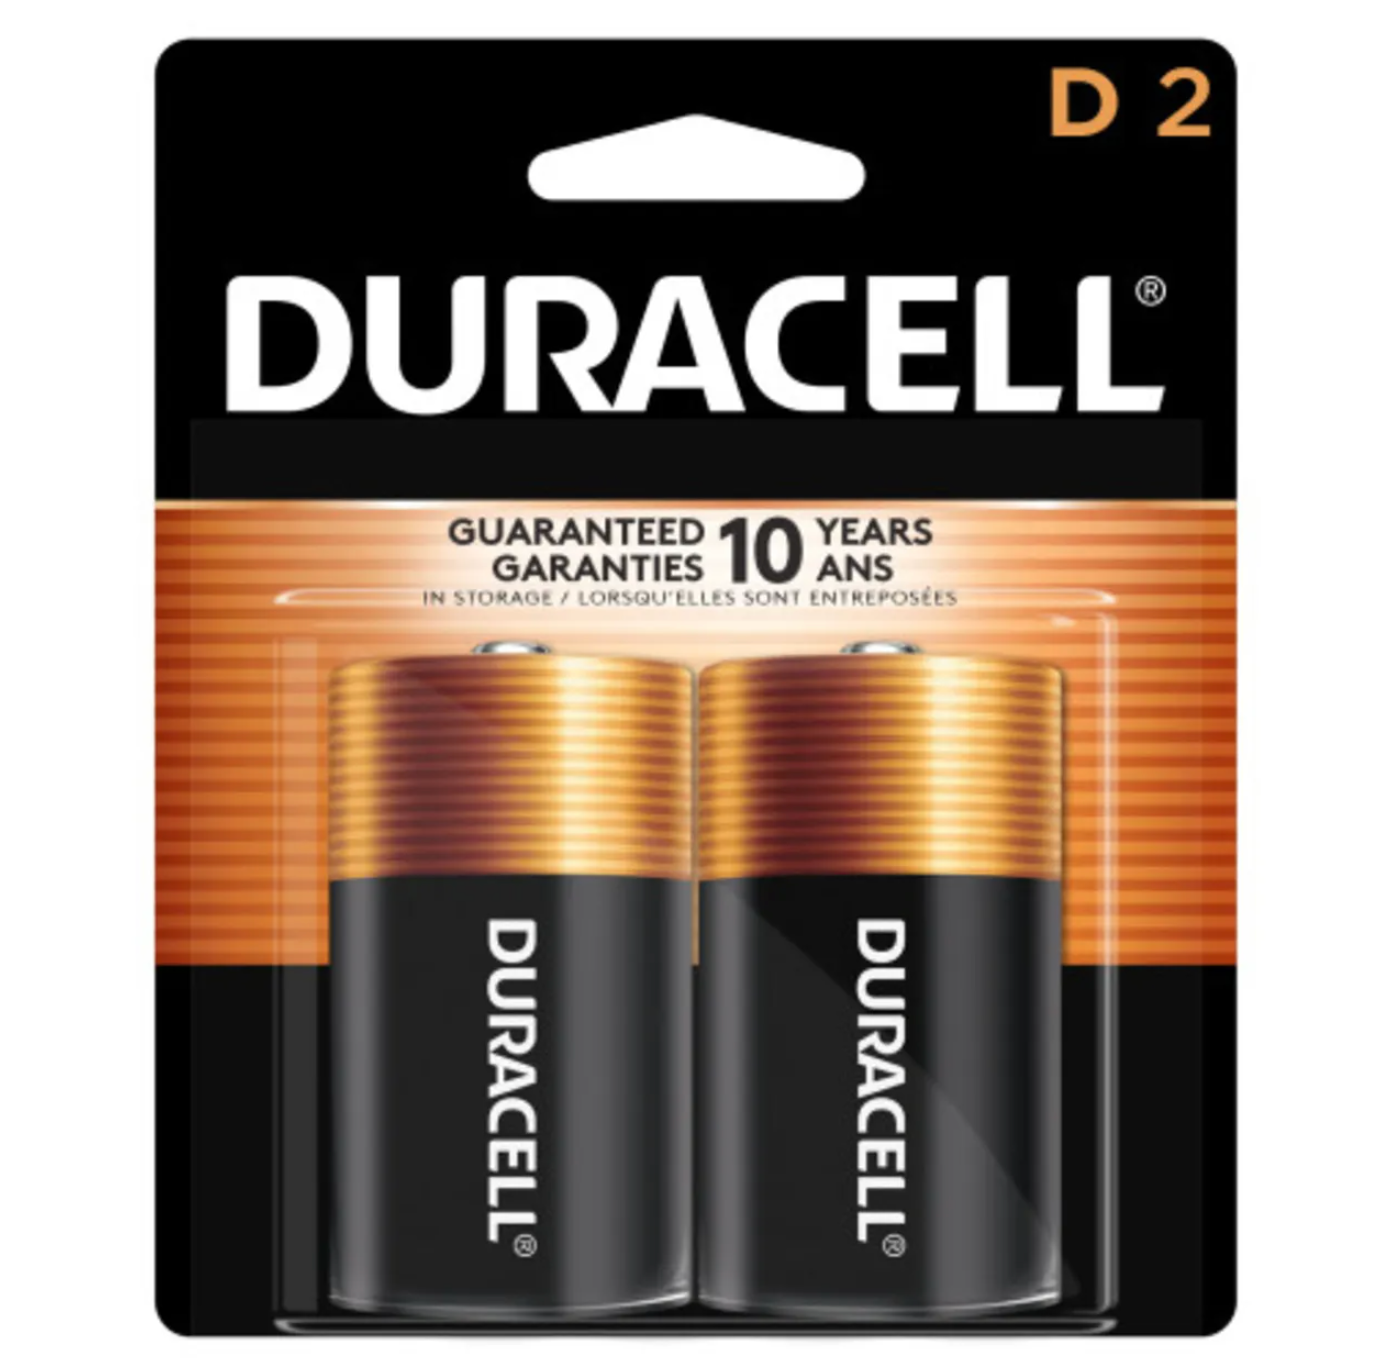 Duracell Coppertop D Alkaline Batteries - 2 Pack